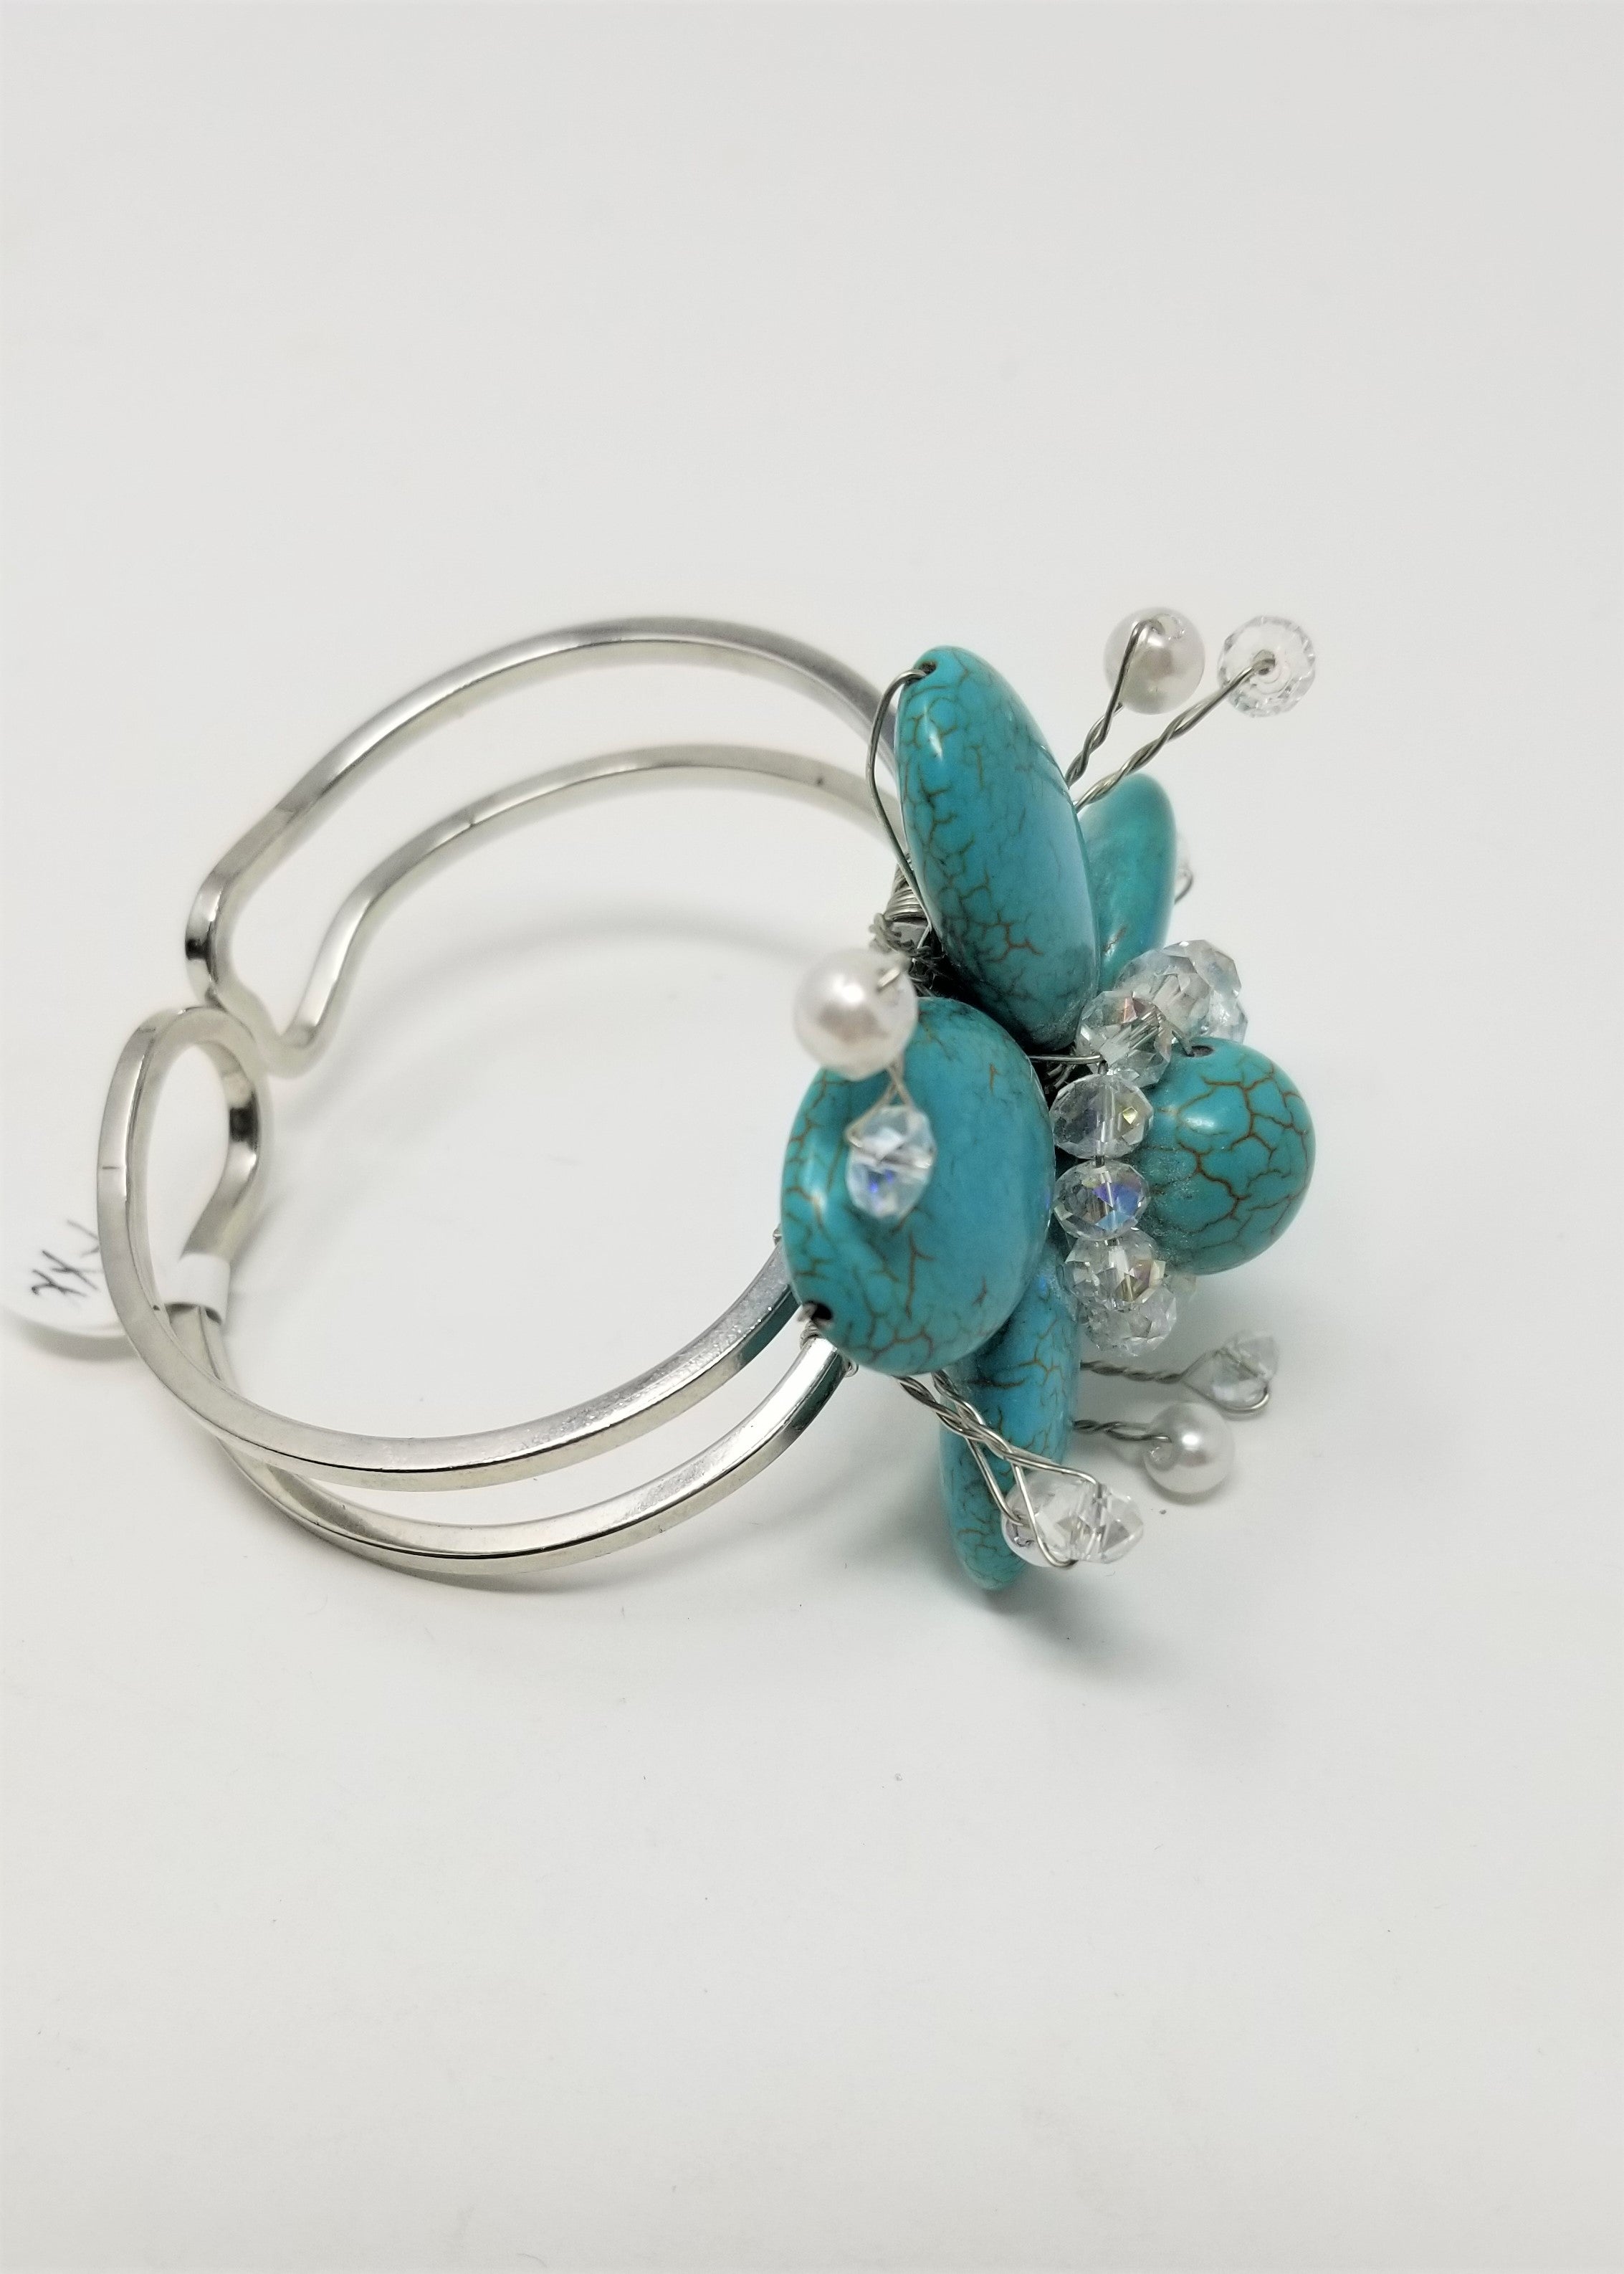 Handmade Turquoise Flower Bangle Bracelet